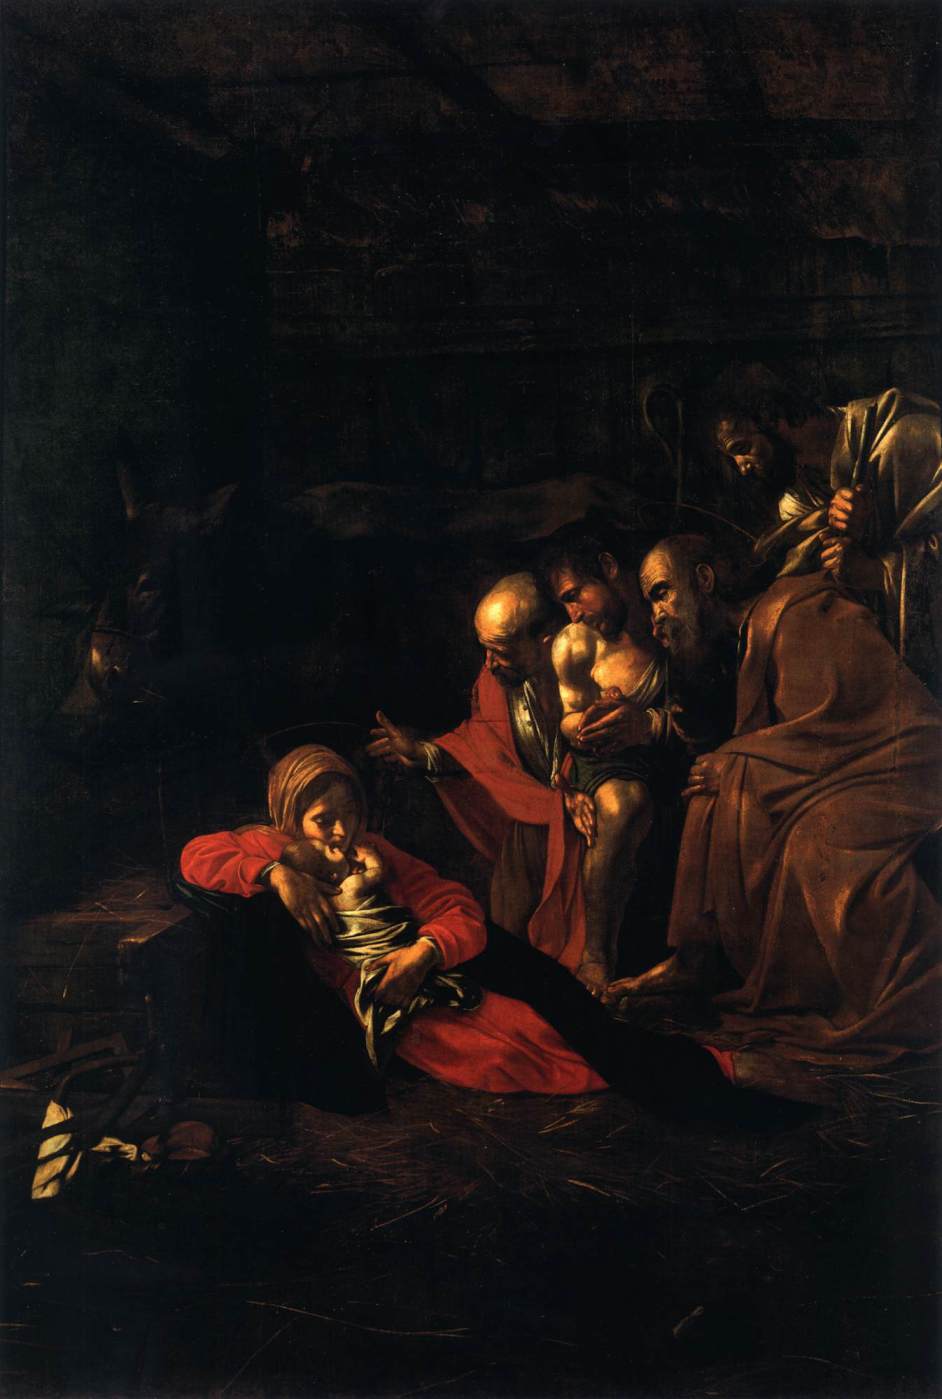 カラヴァッジョ　「羊飼いの礼拝 」1609　　Oil on canvas, 314 x 211 cm　　メッシーナ州立美術館